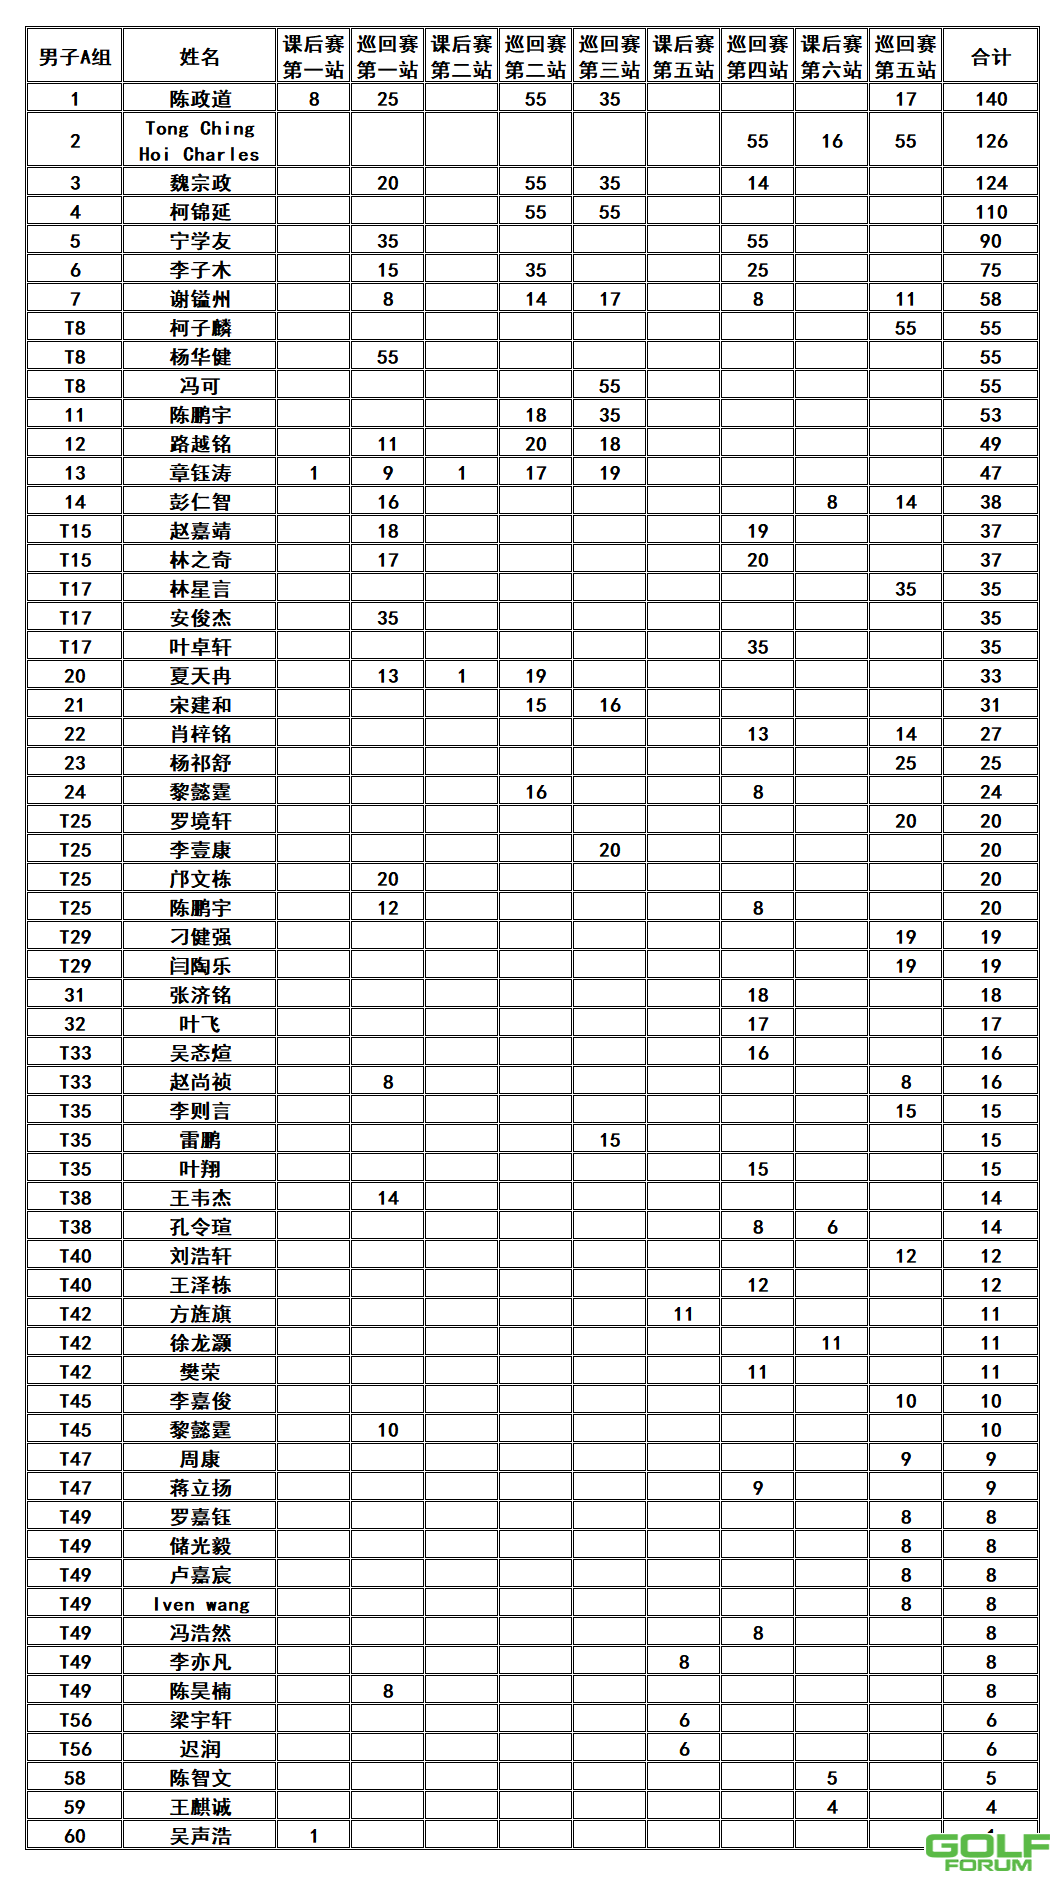 【积分榜】2021深圳青少年积分榜